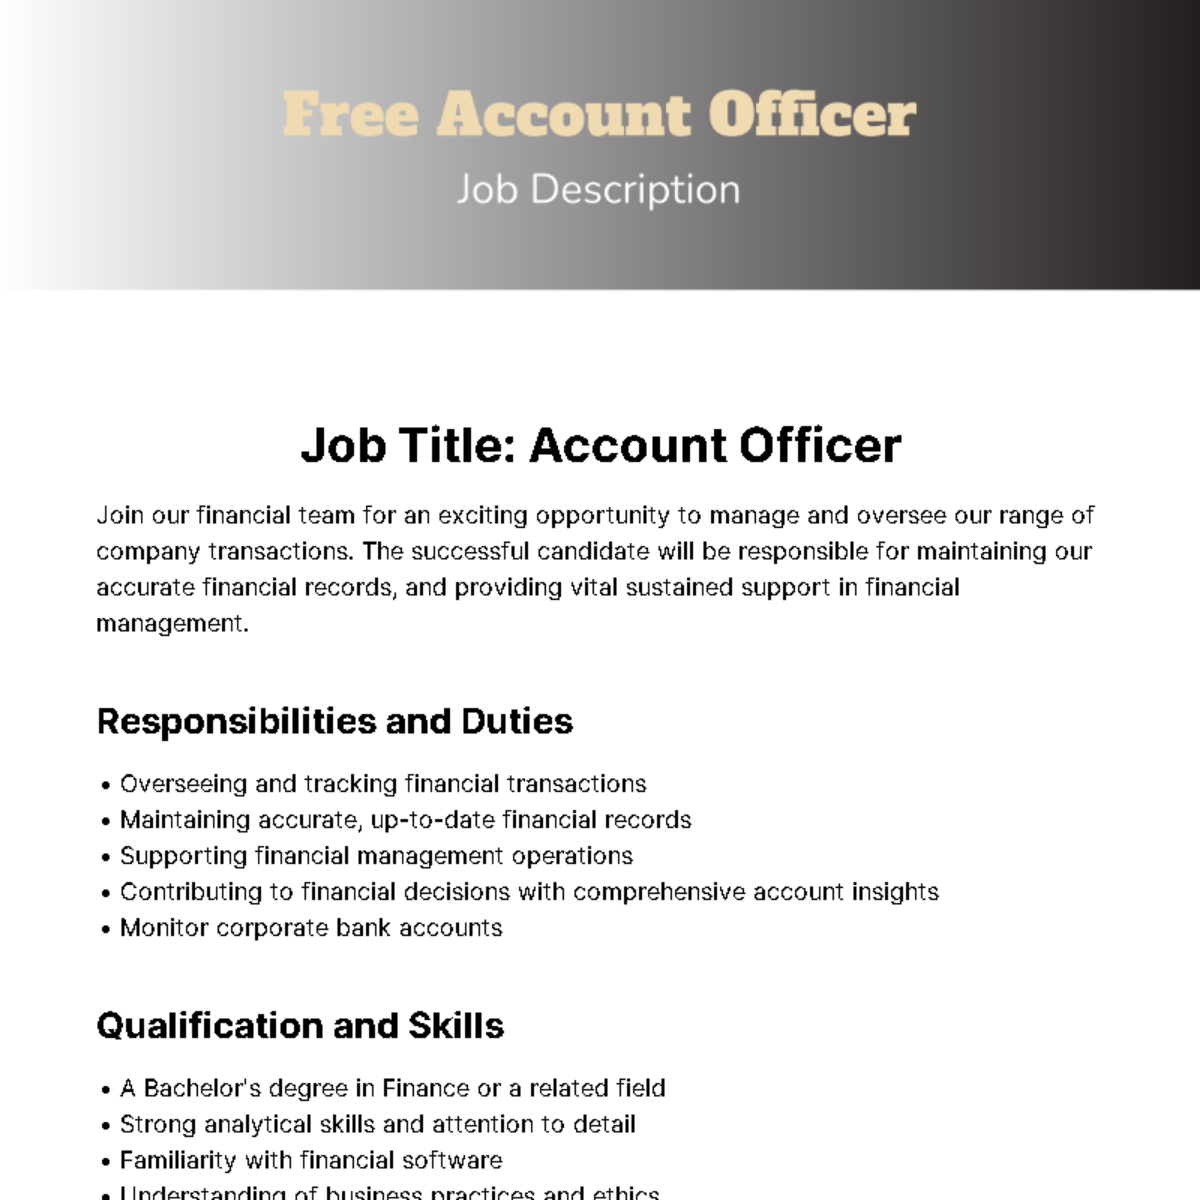 Account Officer Job Description Template